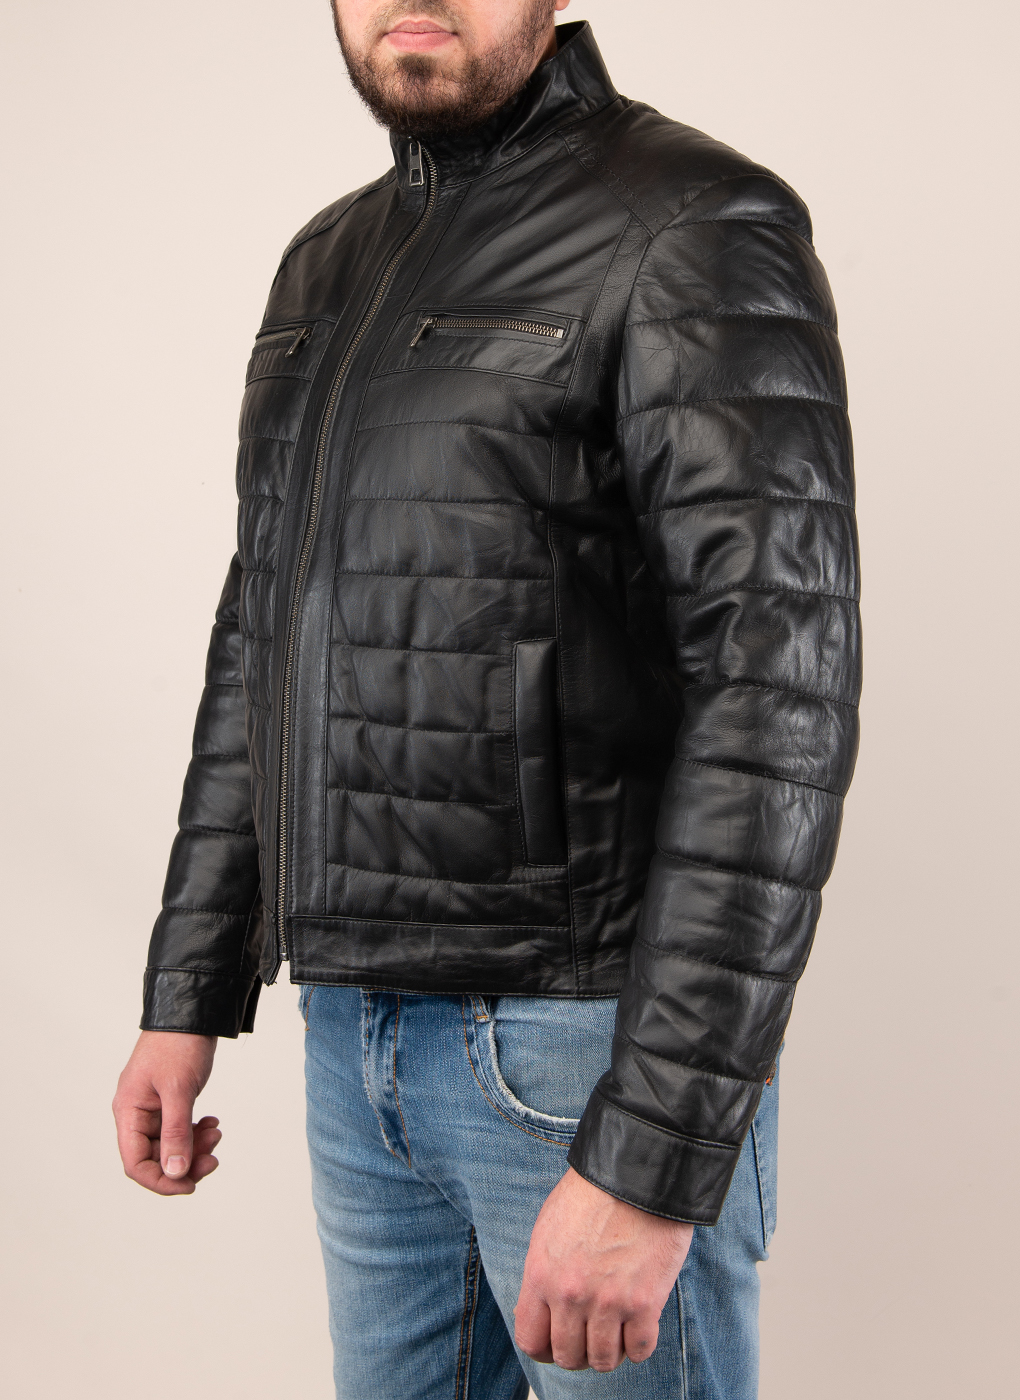 Кожаная куртка мужская Каляев 49120 черная 44 RU